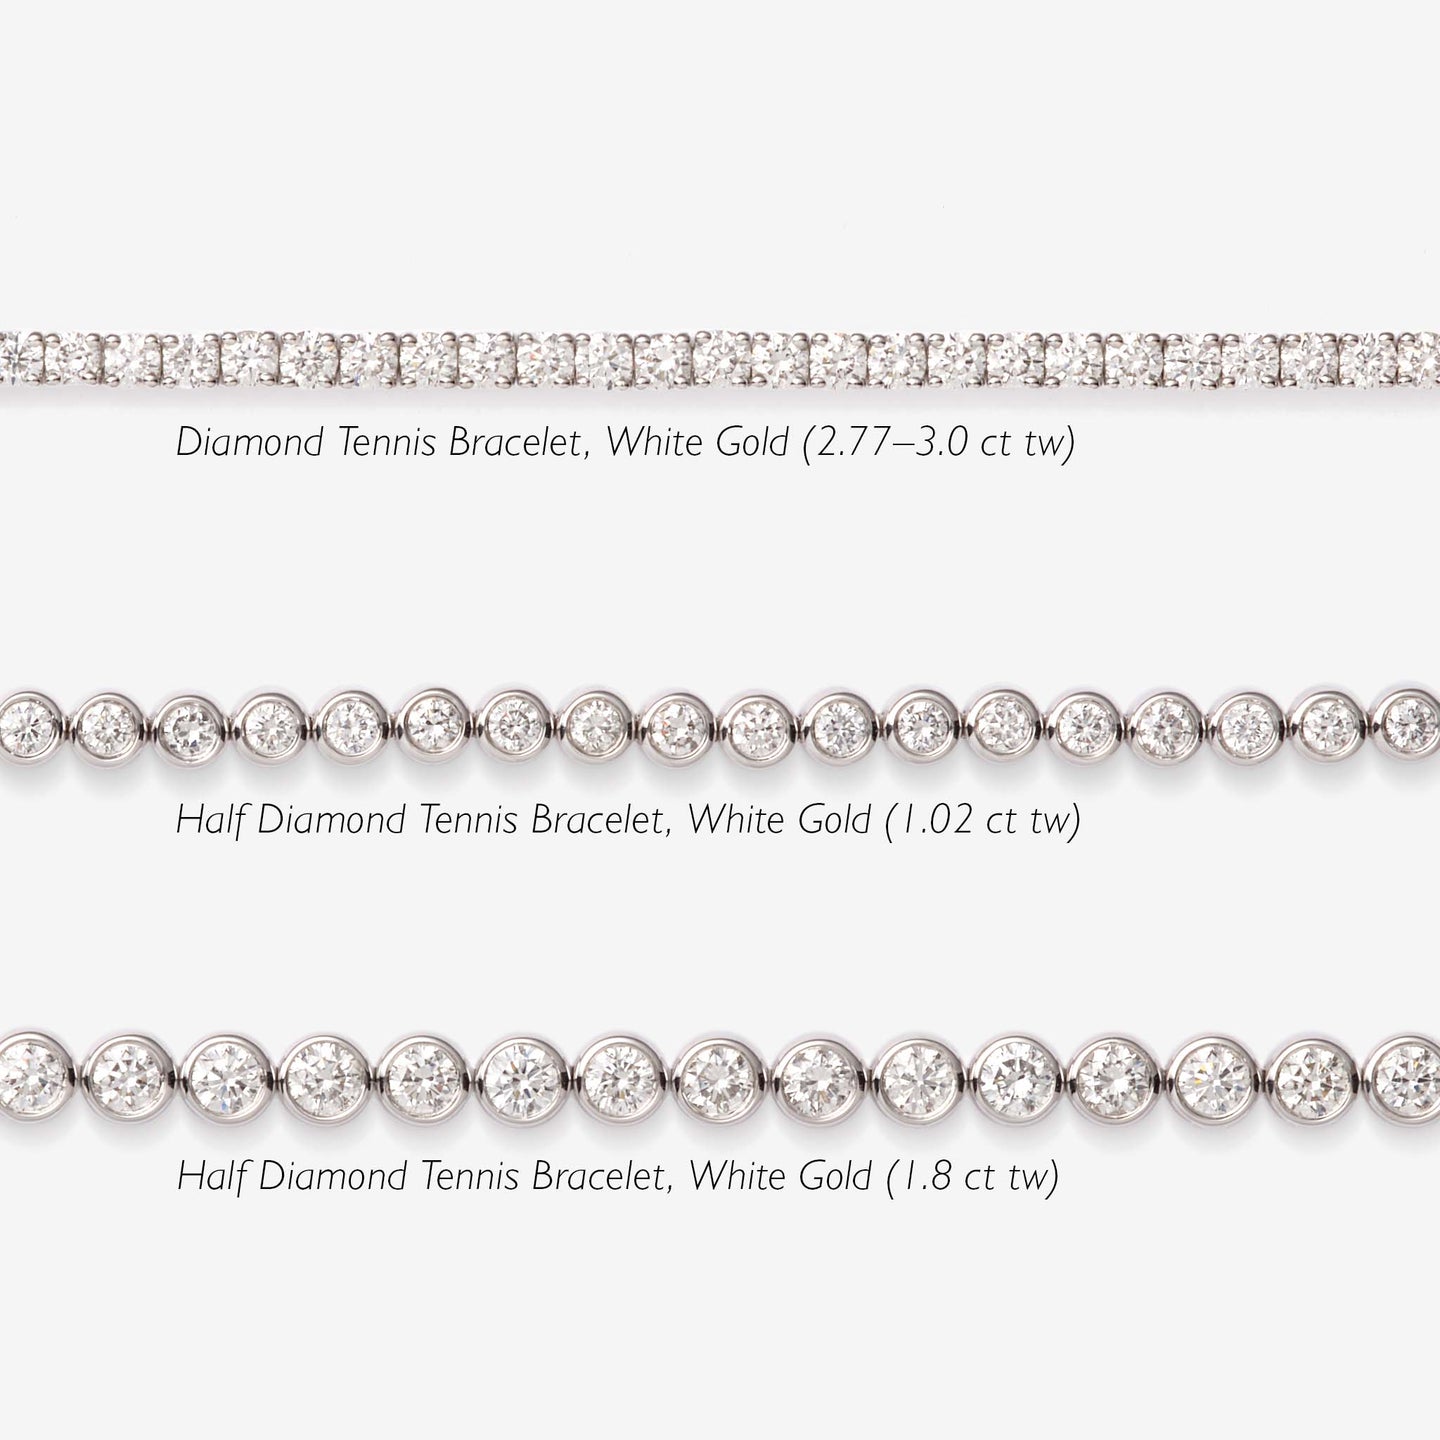 Diamond Tennis Bracelet 14k White Gold (2.77 ct tw, 6.5 inches)